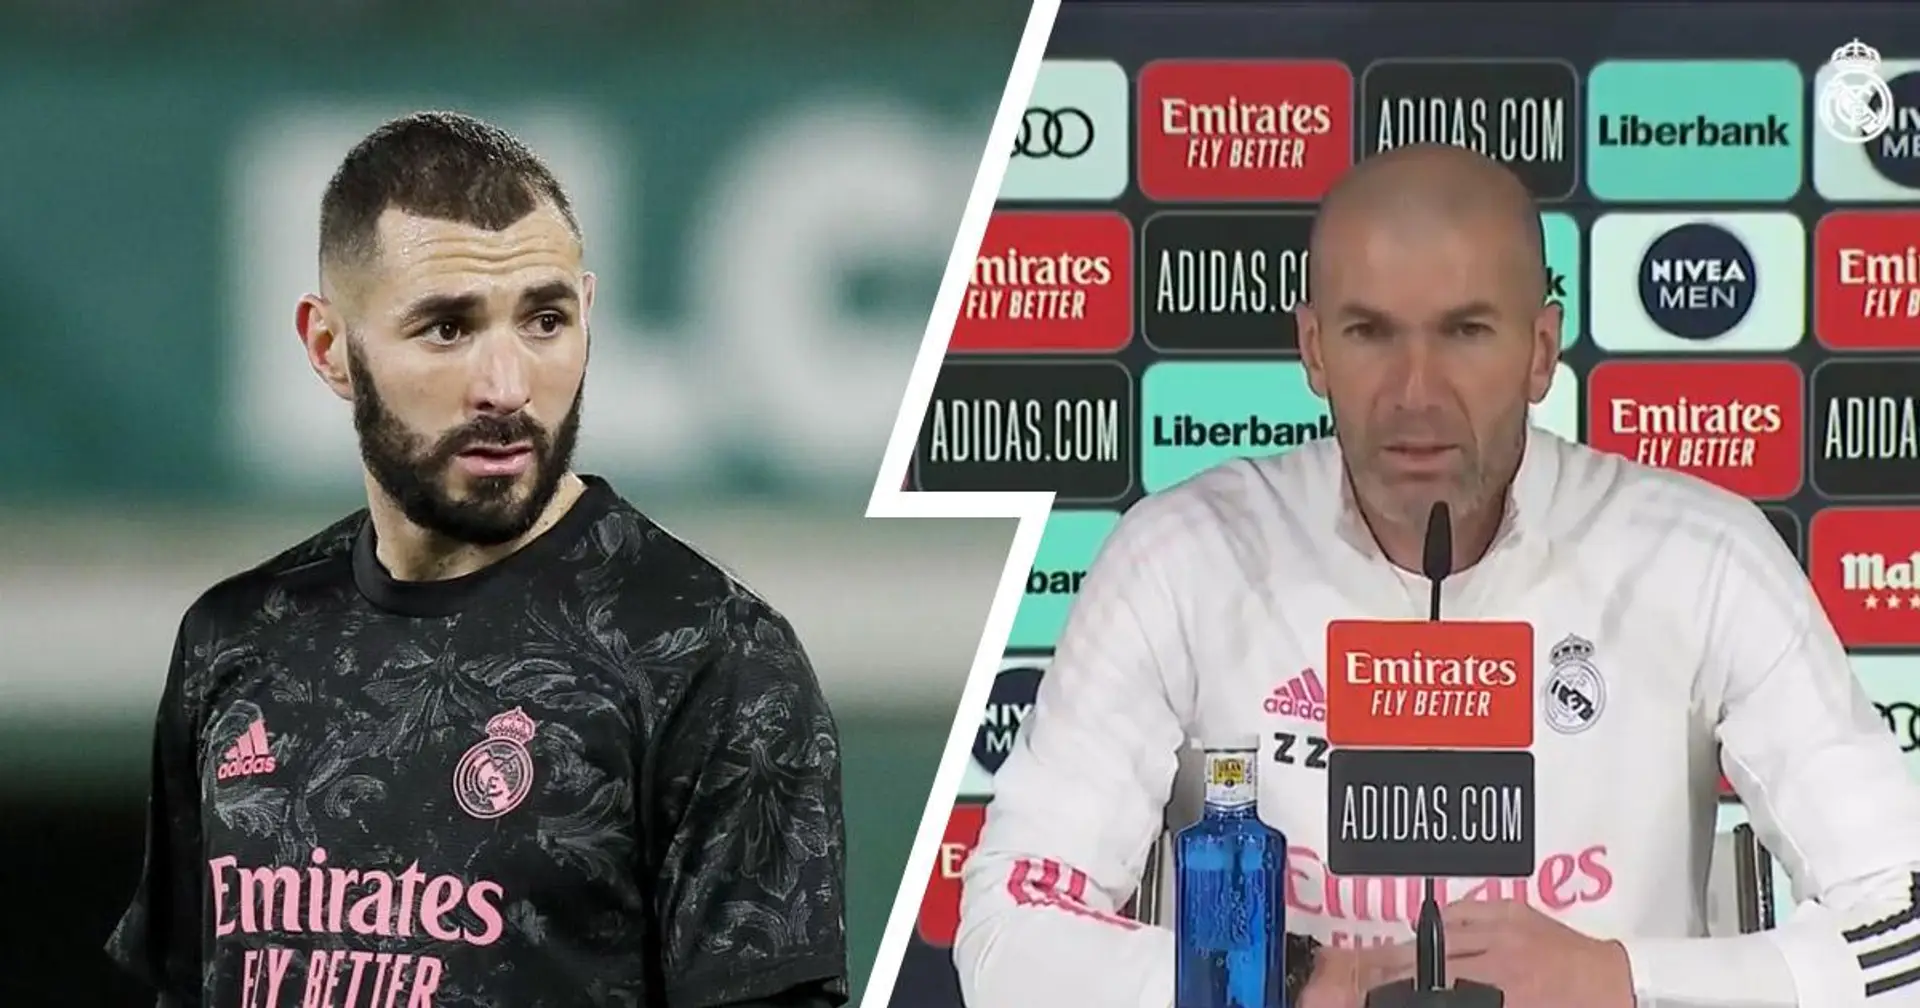 Zinedine Zidane "soutient complètement" Karim Benzema alors que l'attaquant du Real Madrid sera jugé pour son rôle présumé dans le scandale du chantage envers Valbuena